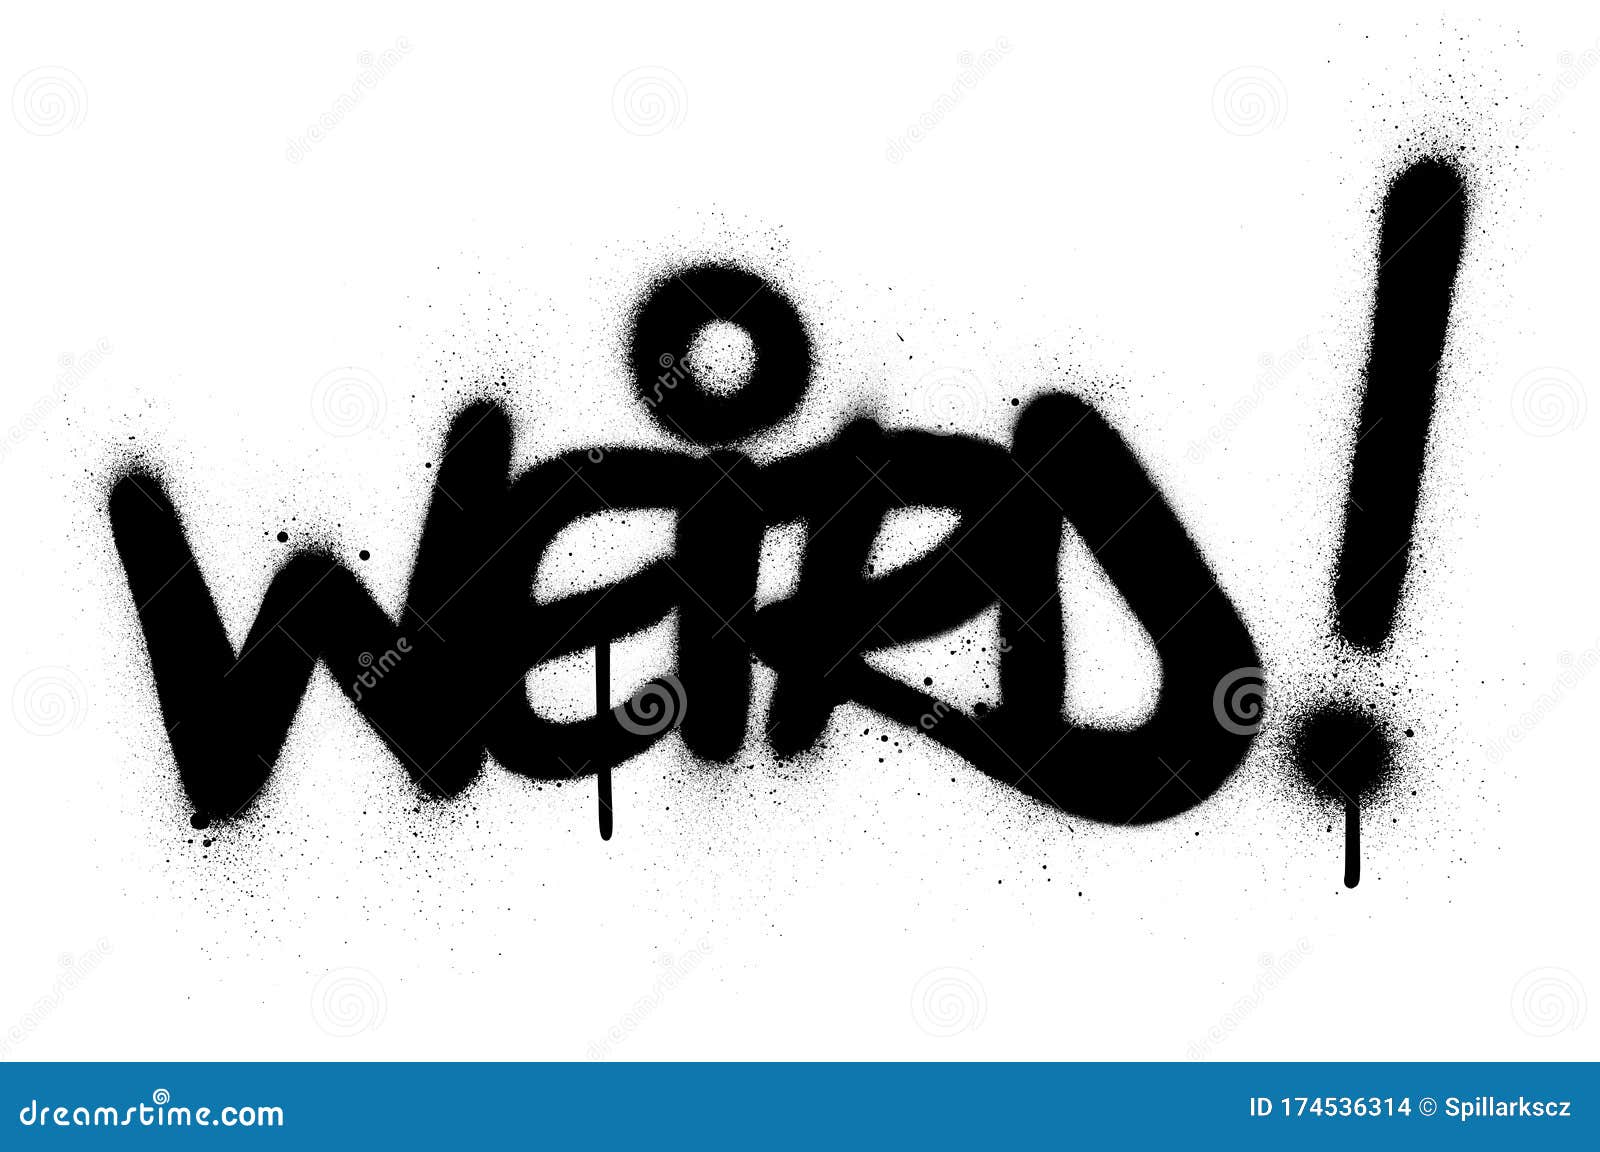 graffiti weird word sprayed in black over white